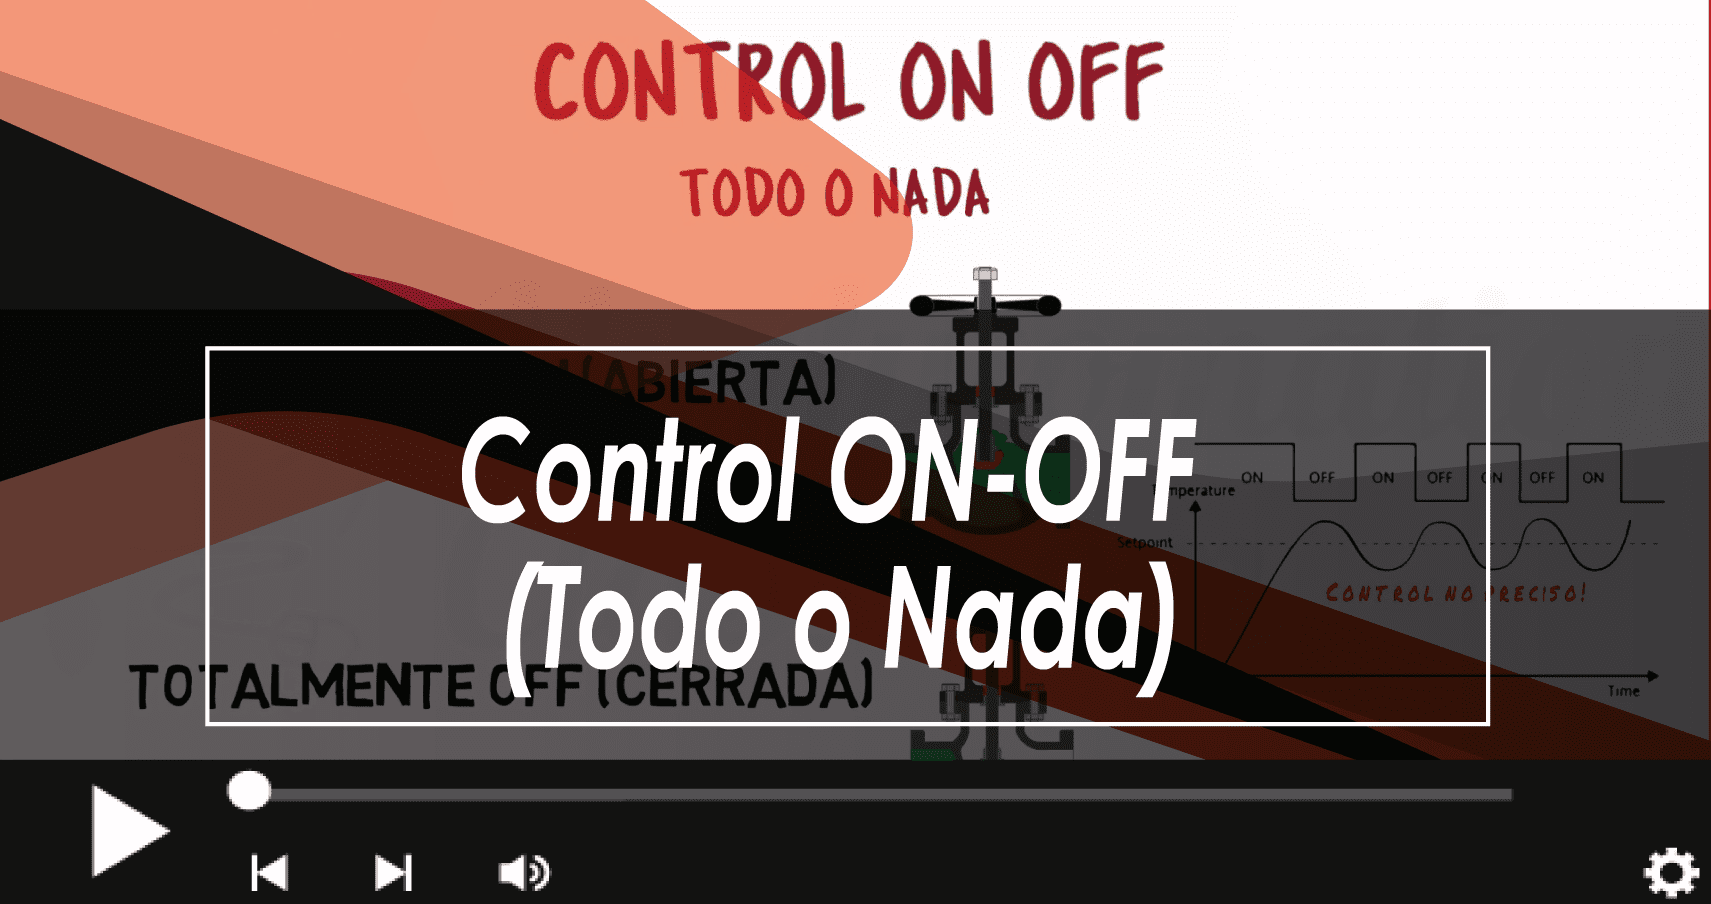 Control ON-OFF
(Todo.o Nada)

J
4 (J <I D 0